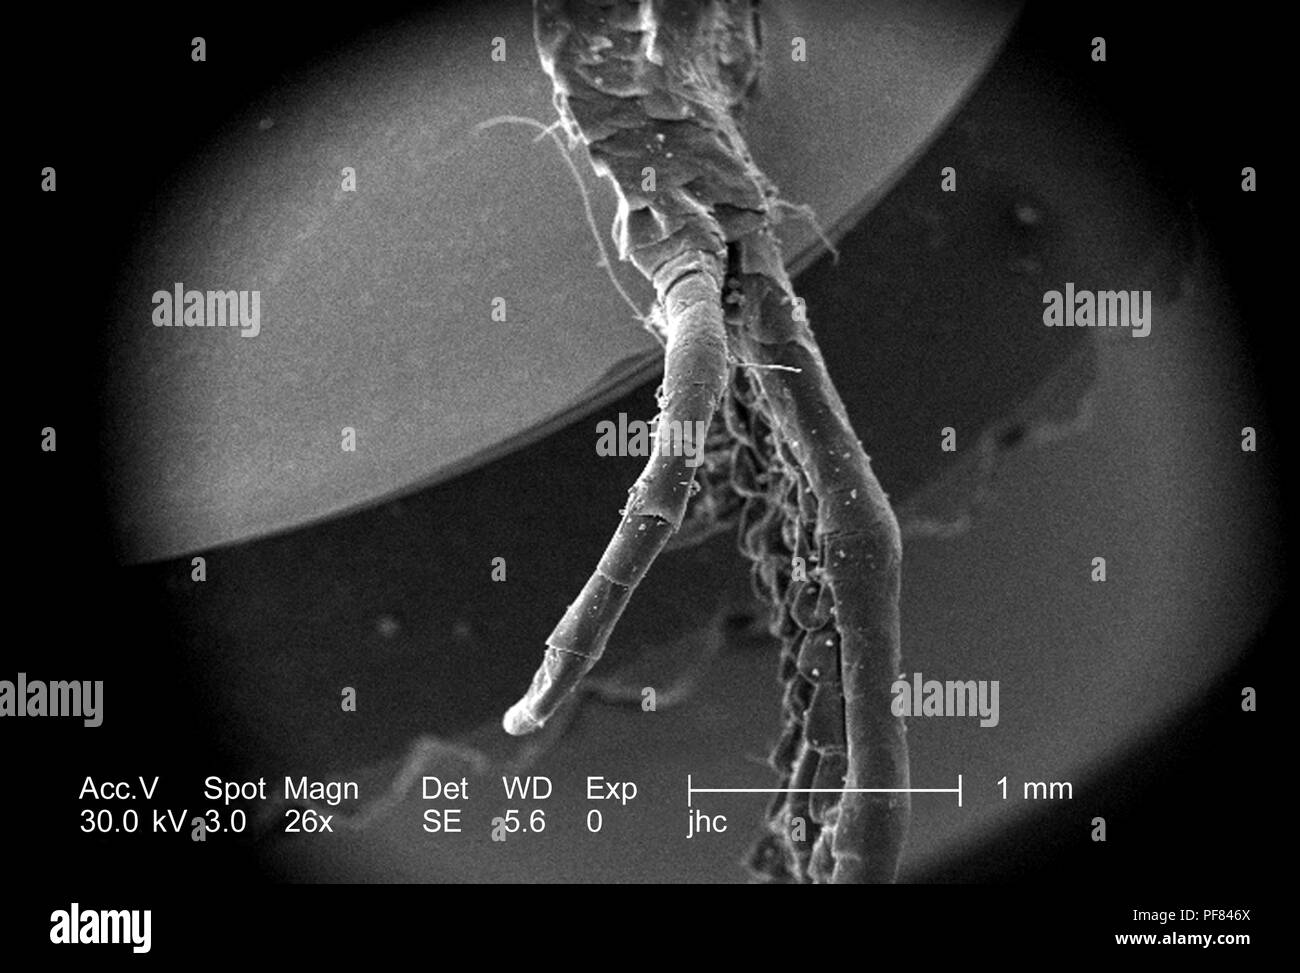 Caratteristiche morfologiche di un defunto lizard piede trovati in Decatur, Georgia, ha rivelato nel 26x di scansione ingrandita al microscopio elettronico (SEM) immagine, 2006. Immagine cortesia di centri per il controllo delle malattie (CDC) / William L. Nicholson, Ph.D. Cal Welbourn, Ph.D. Gary R. Mullen. () Foto Stock